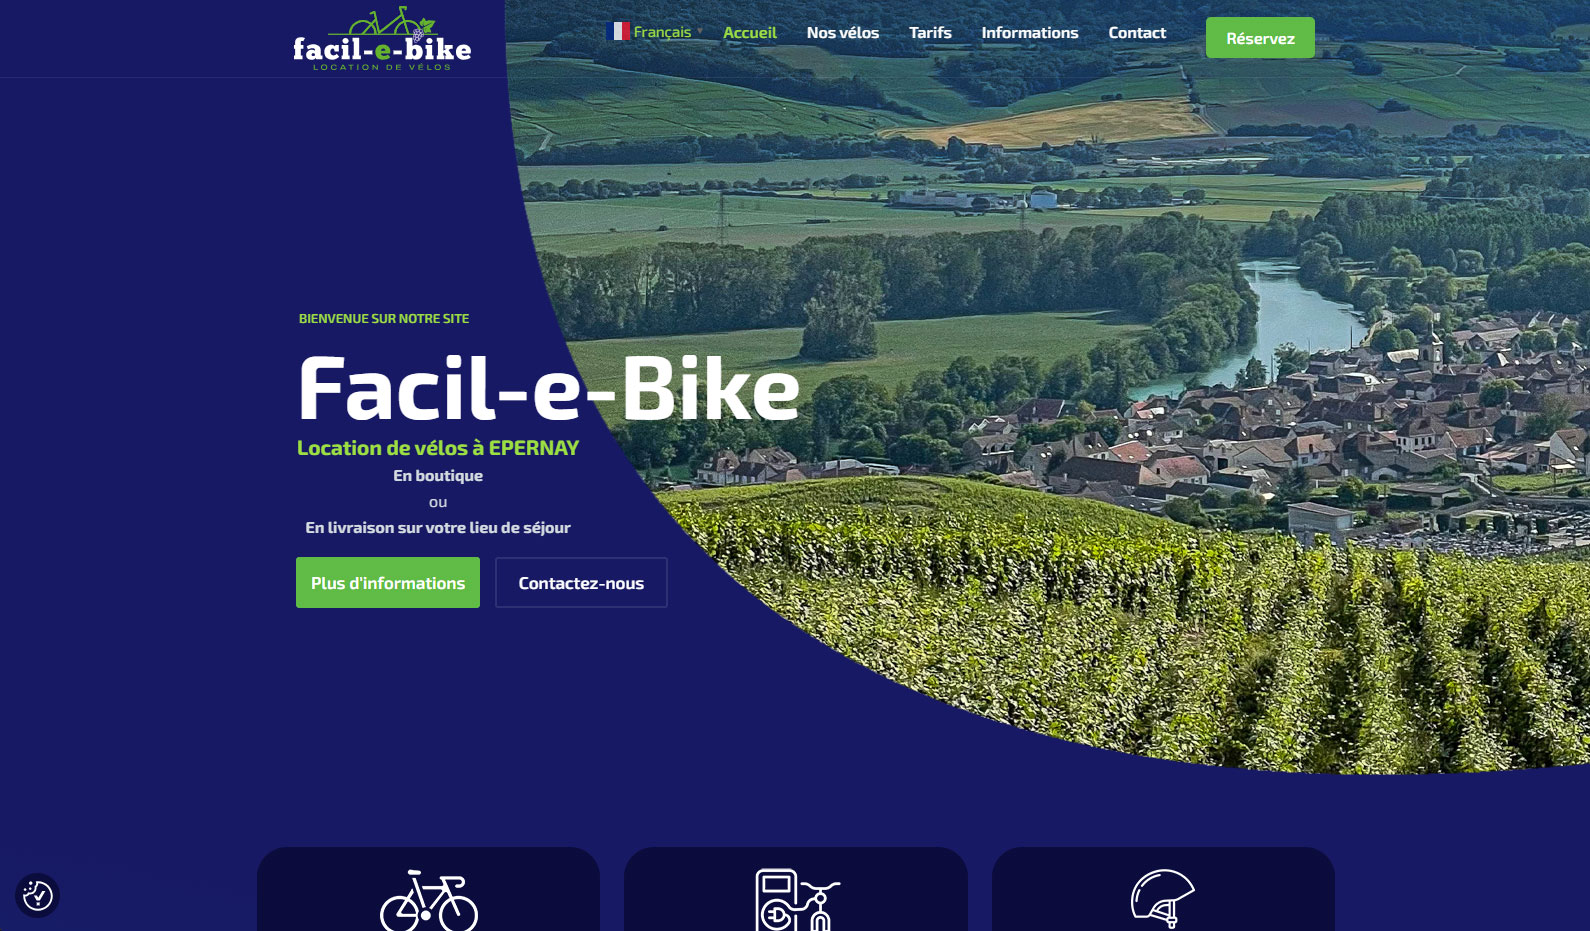 Facil-e-bike Accueil